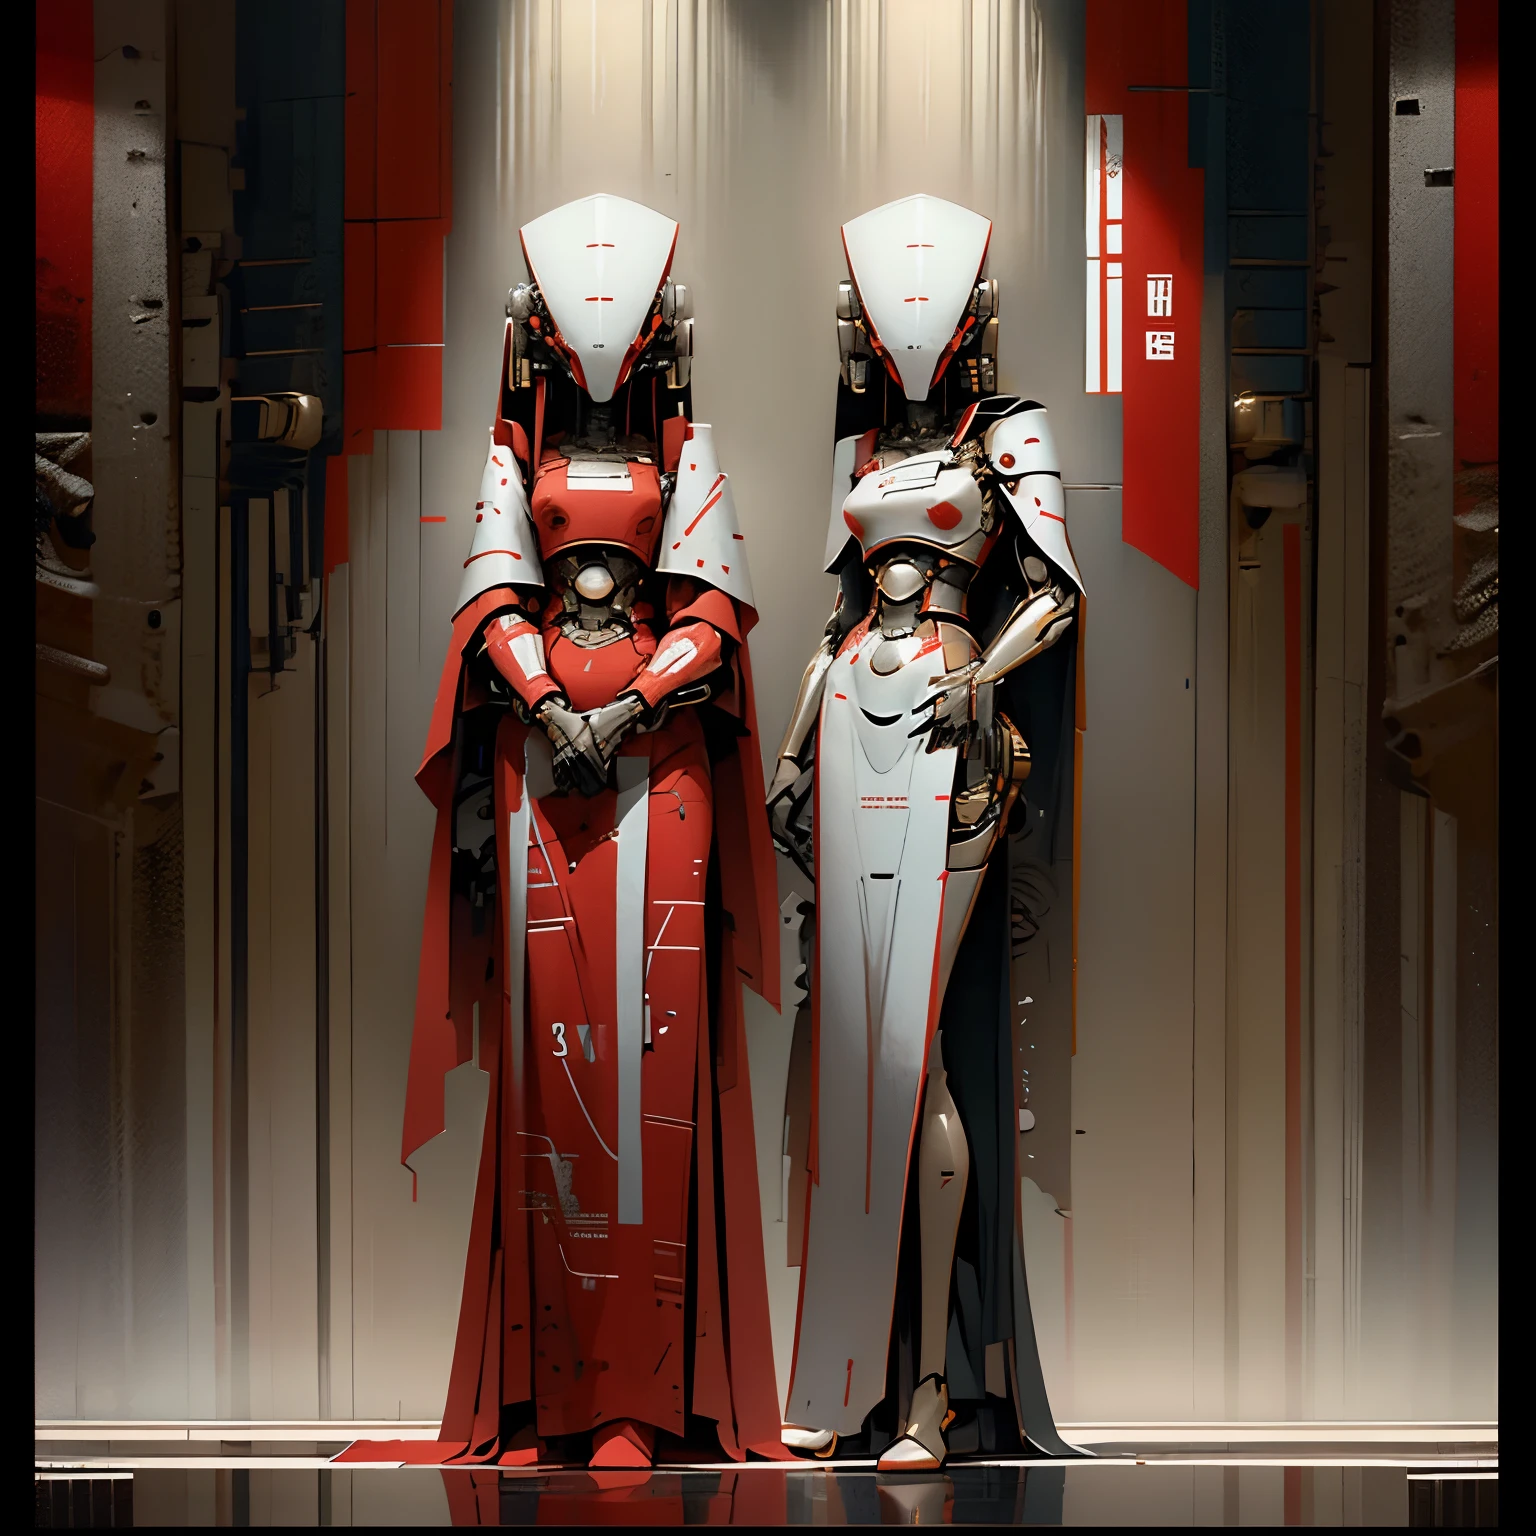 機器人連體雙胞胎, 連接在胸部, 非常優雅的機器人, 紅白長袍, 穿著紅色連身裙, 長四肢, 光滑的機器人鑲板, 非常薄的框架, 平胸, 